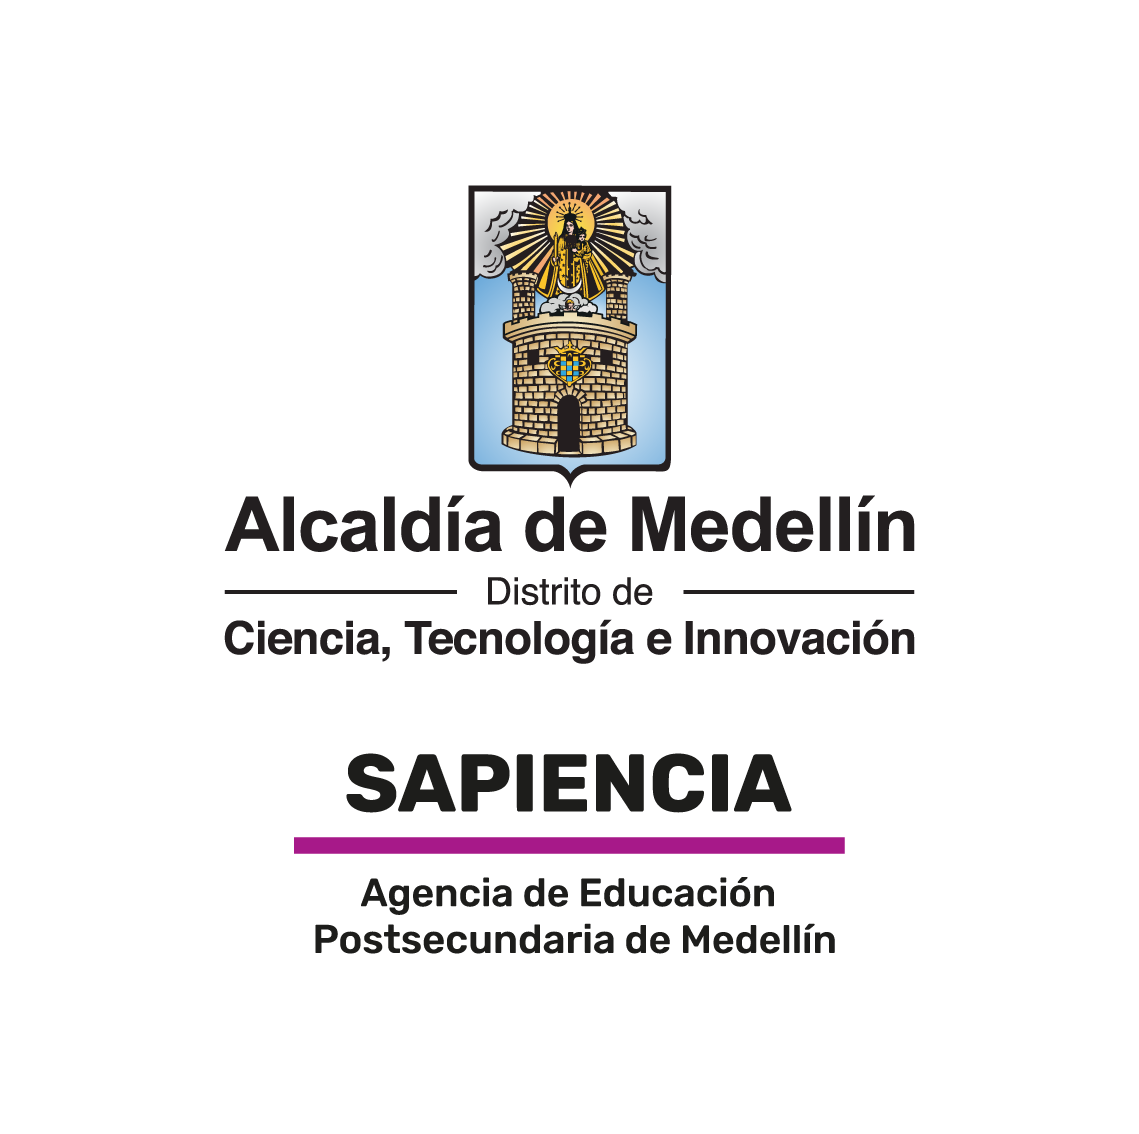 Sapiencia. Encuentra oportunidades para estudiar en Medellín con los Fondos y Becas de la Alcaldía de Medellín.